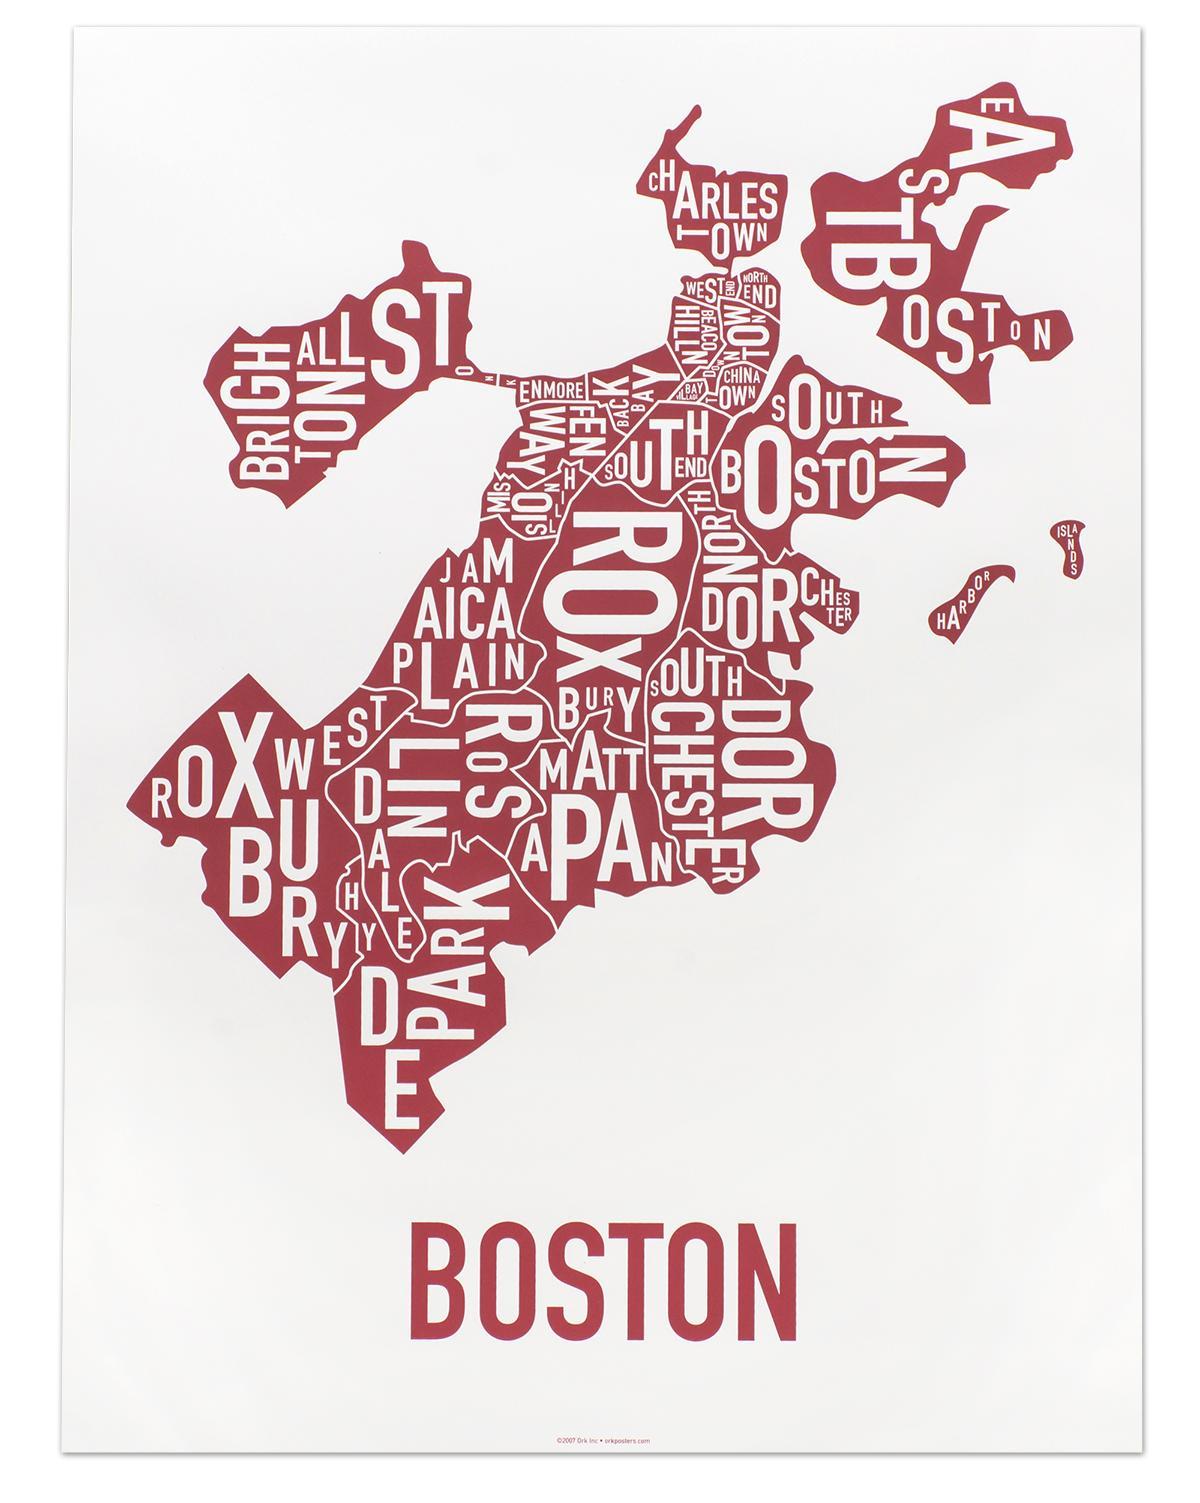 बोस्टन के शहर के नक्शे